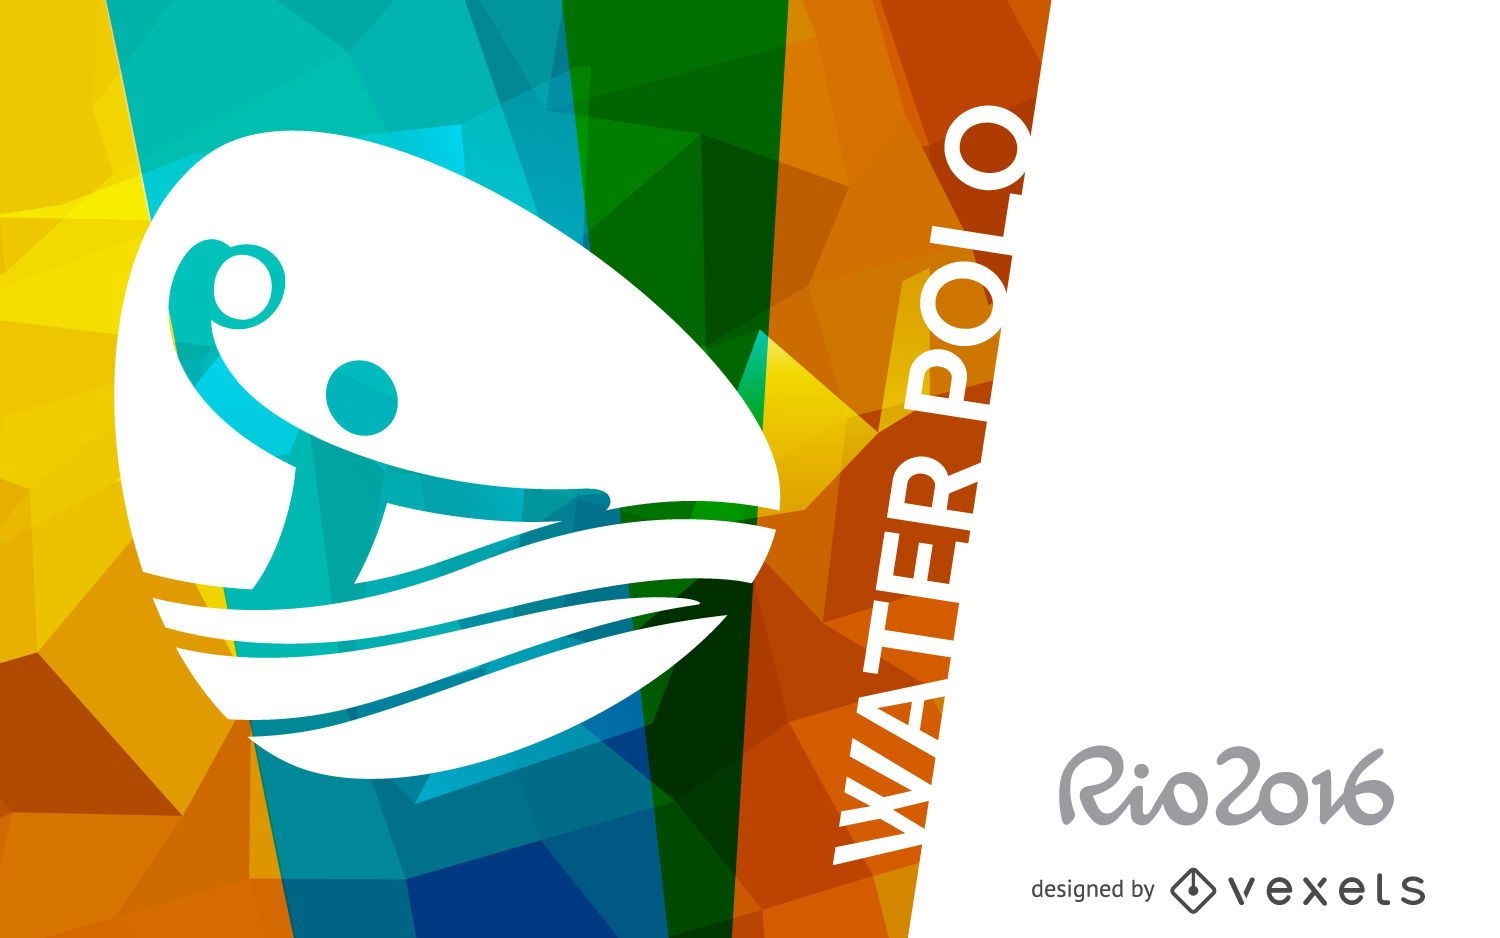 P?ster de waterpolo Rio 2016